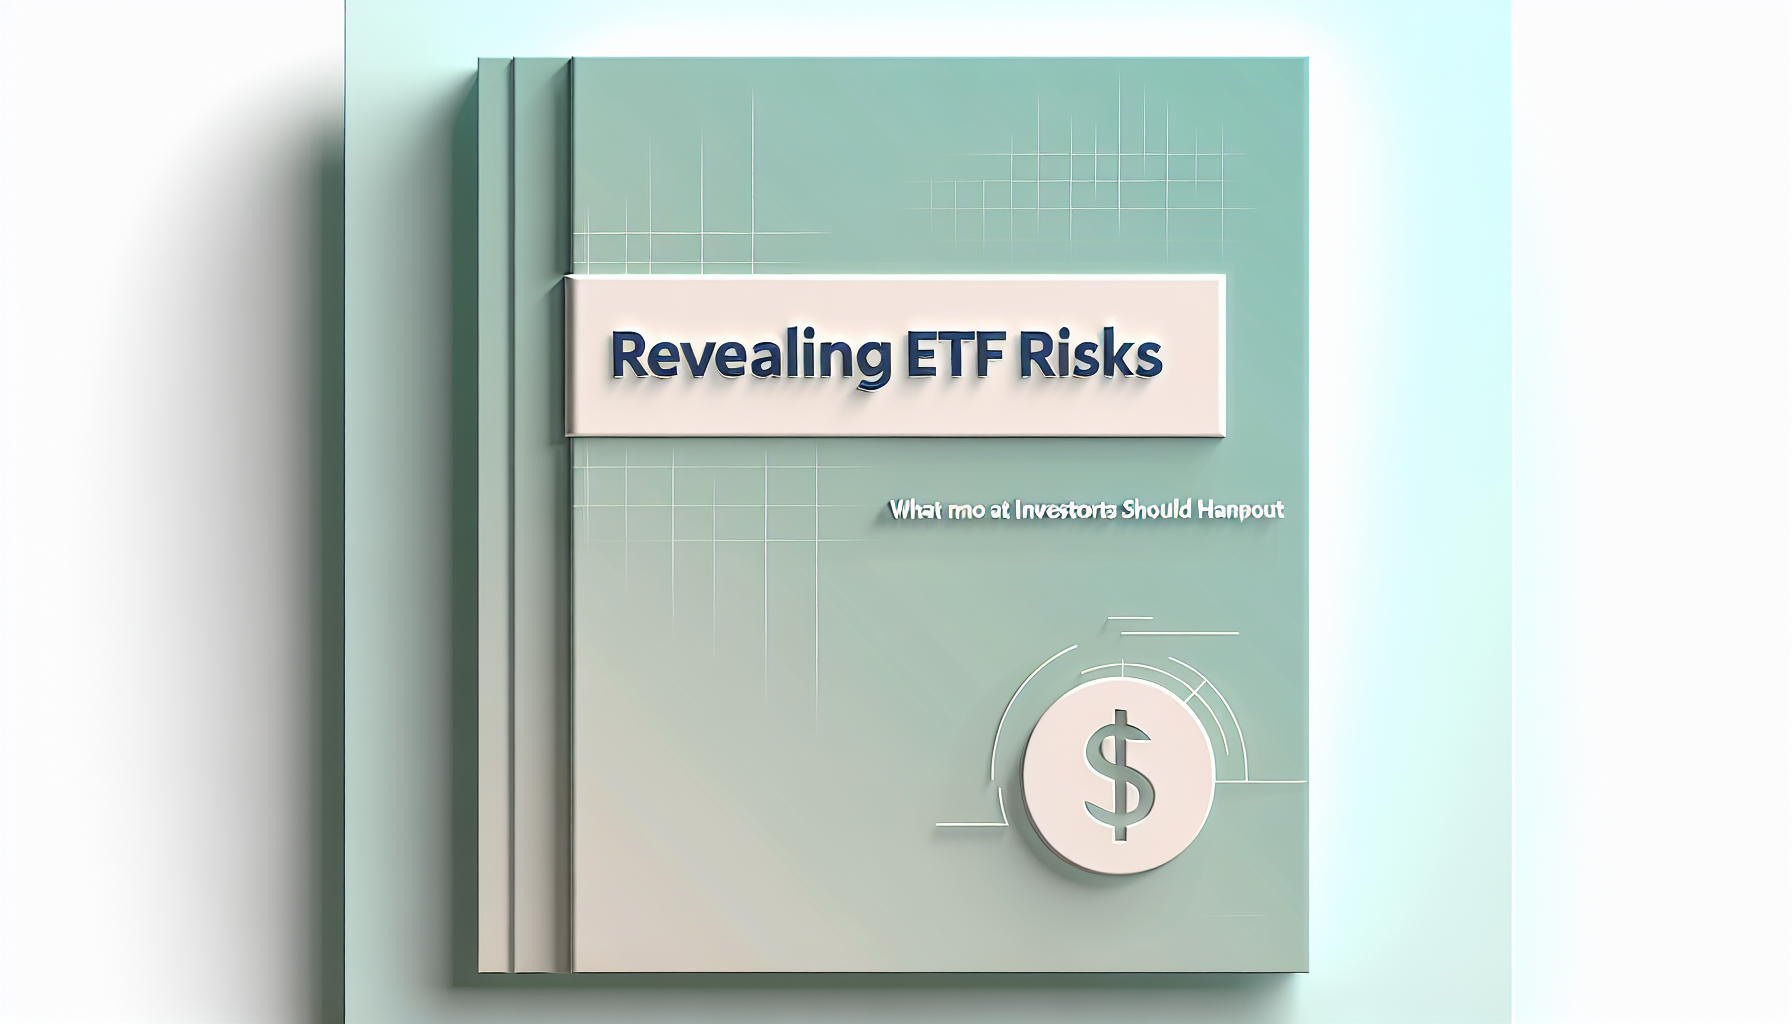 ETF-Risiken entlarvt: Das sollten Anleger wissen